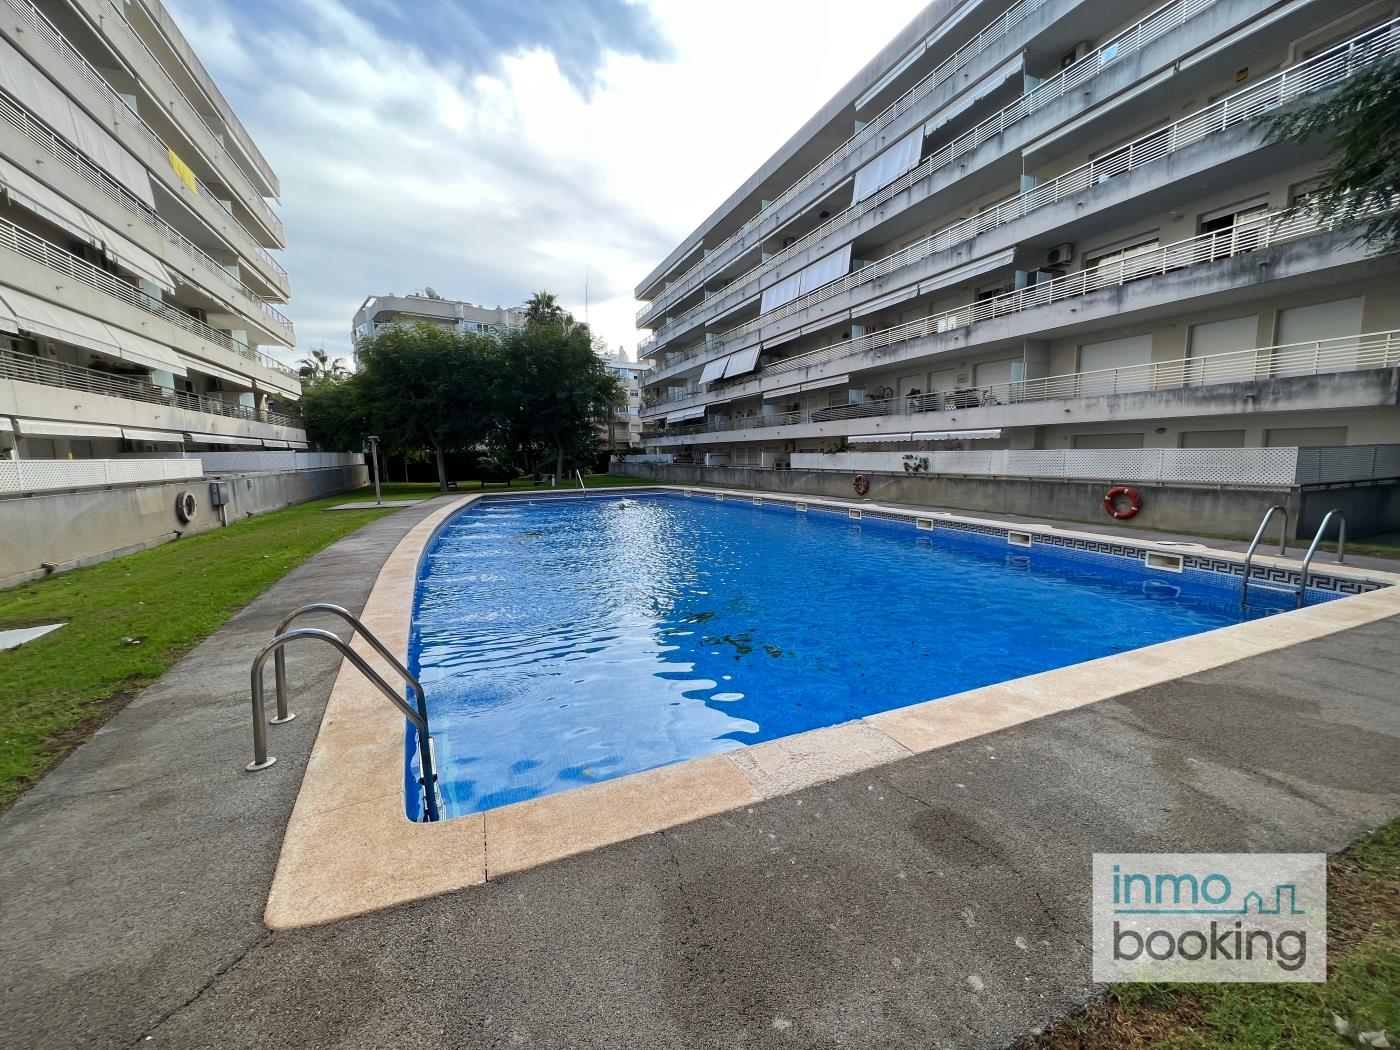 Inmobooking Villa Elvira , con piscina y aparcamiento gratis en salou